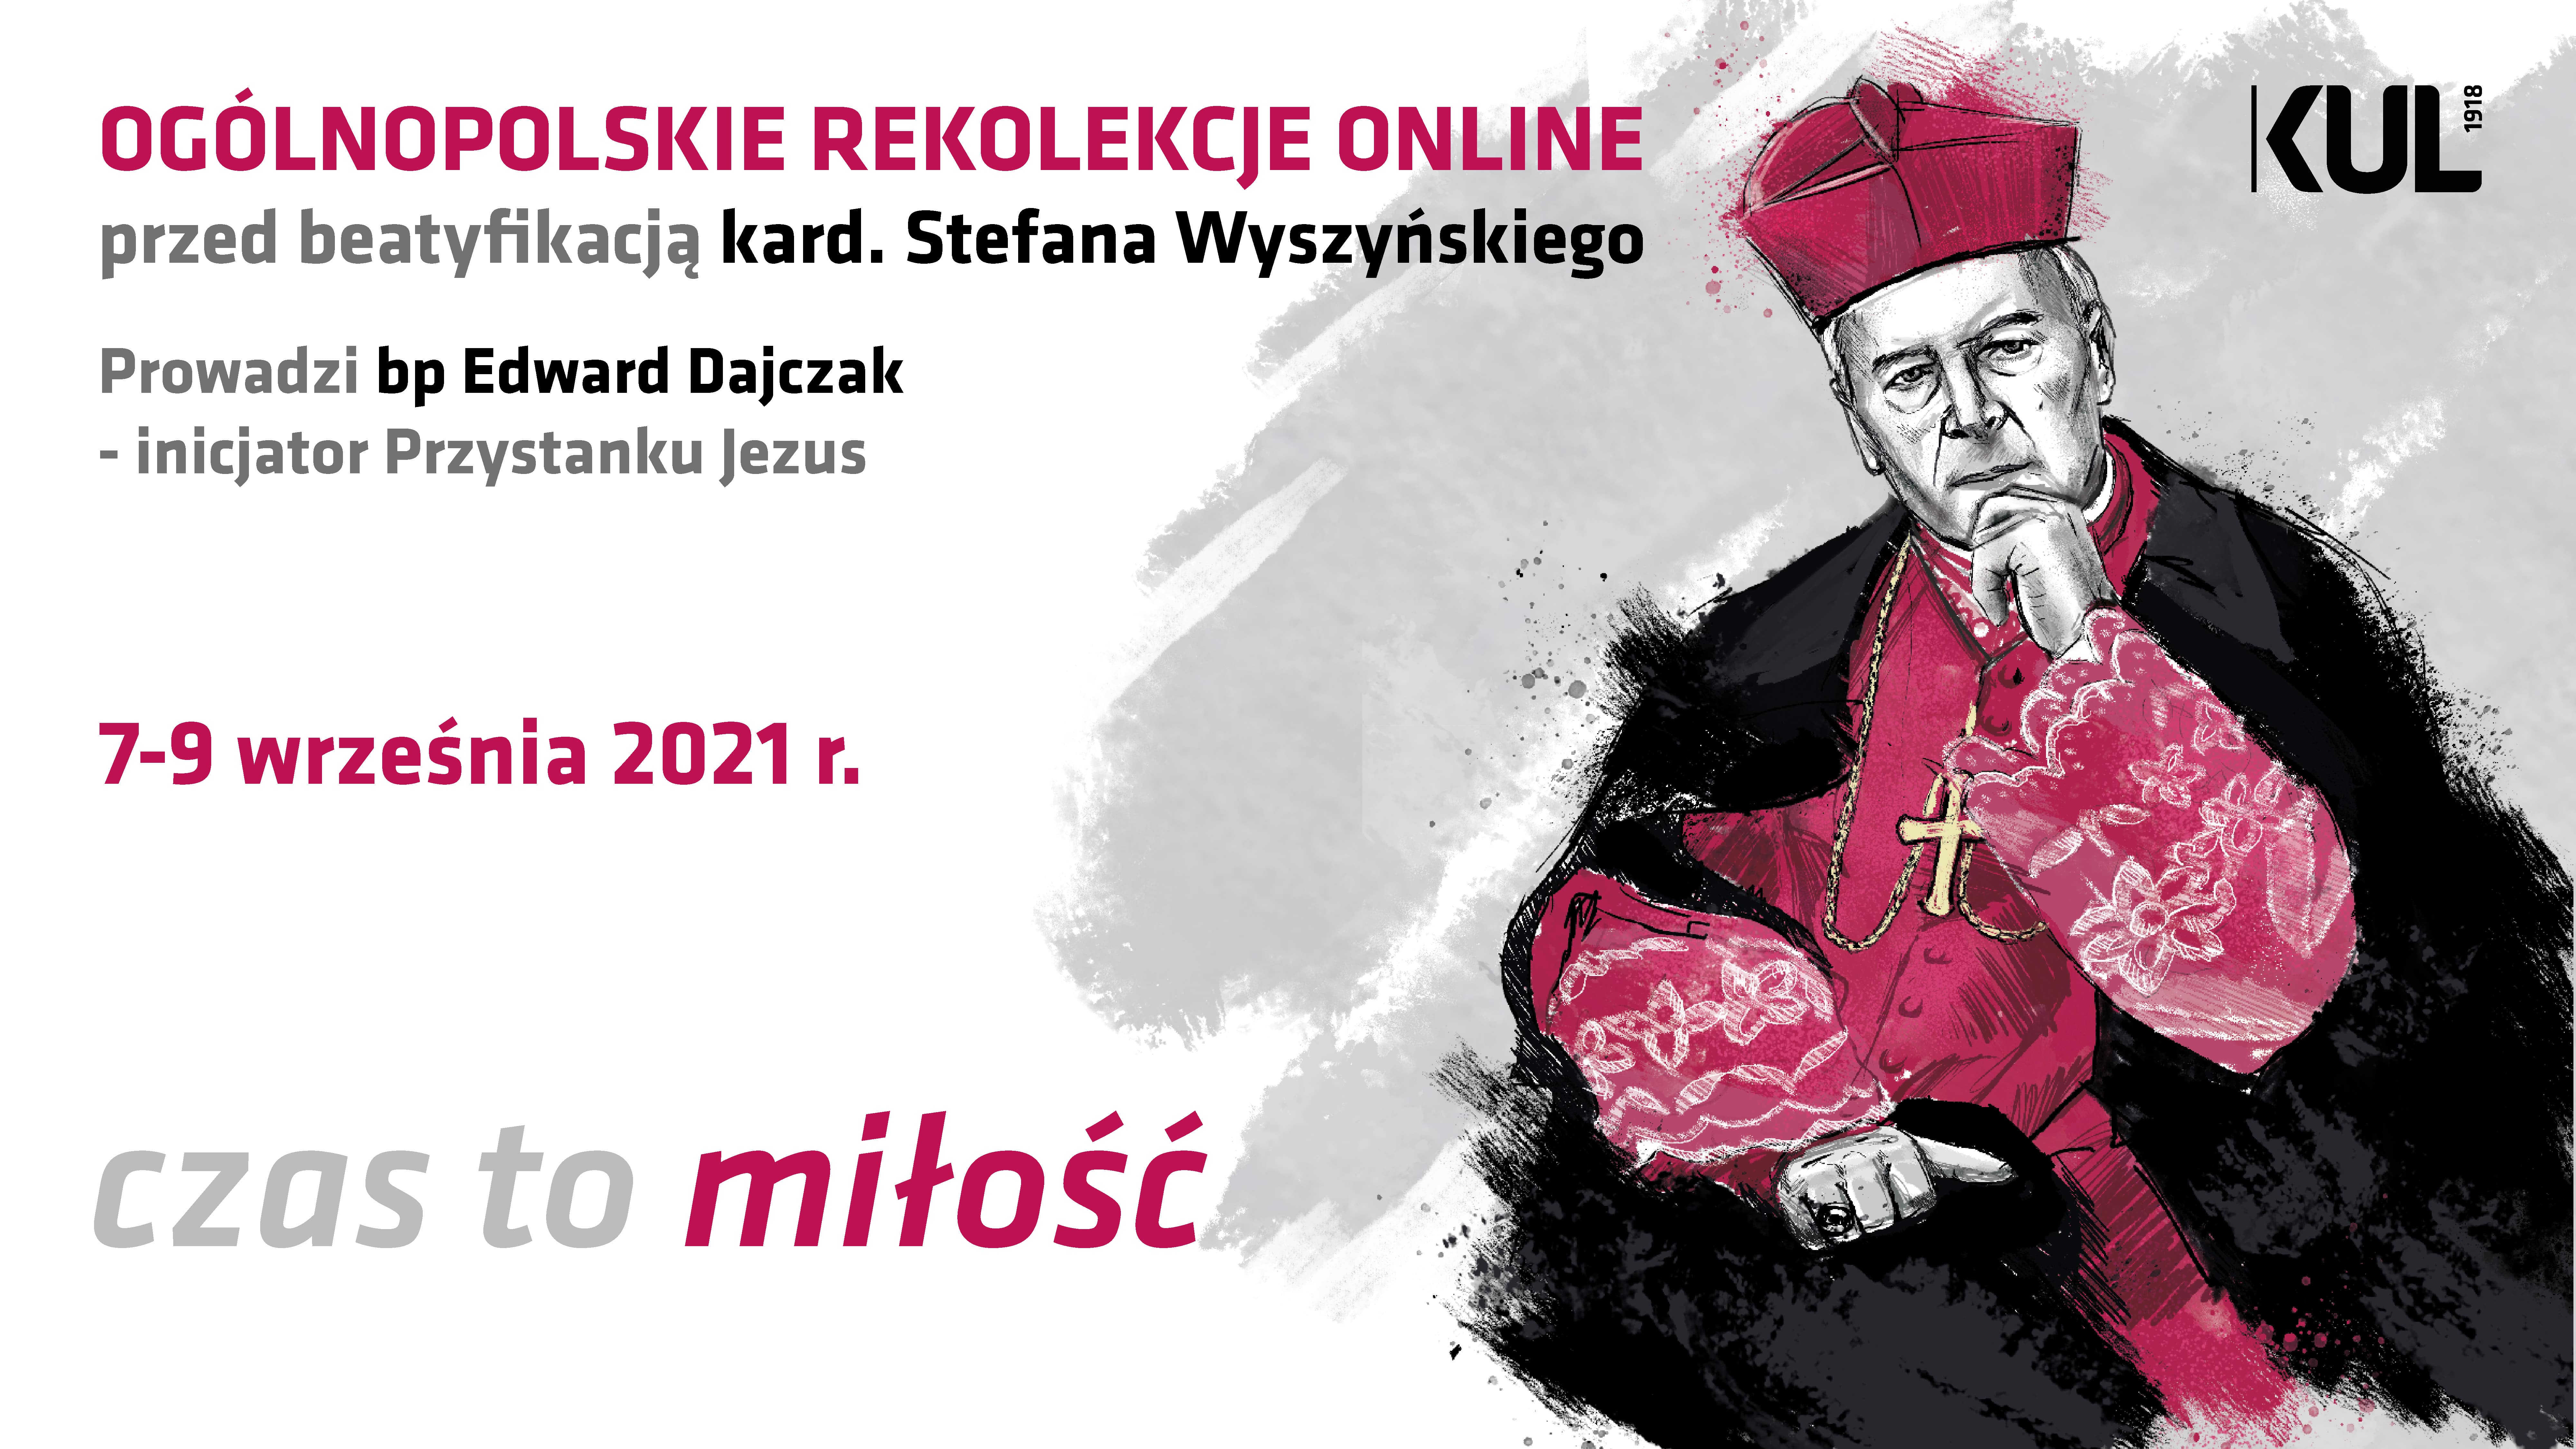 Lublin: KUL organizuje specjalne rekolekcje. Przed beatyfikacją kard. Stefana Wyszyńskiego  - Zdjęcie główne